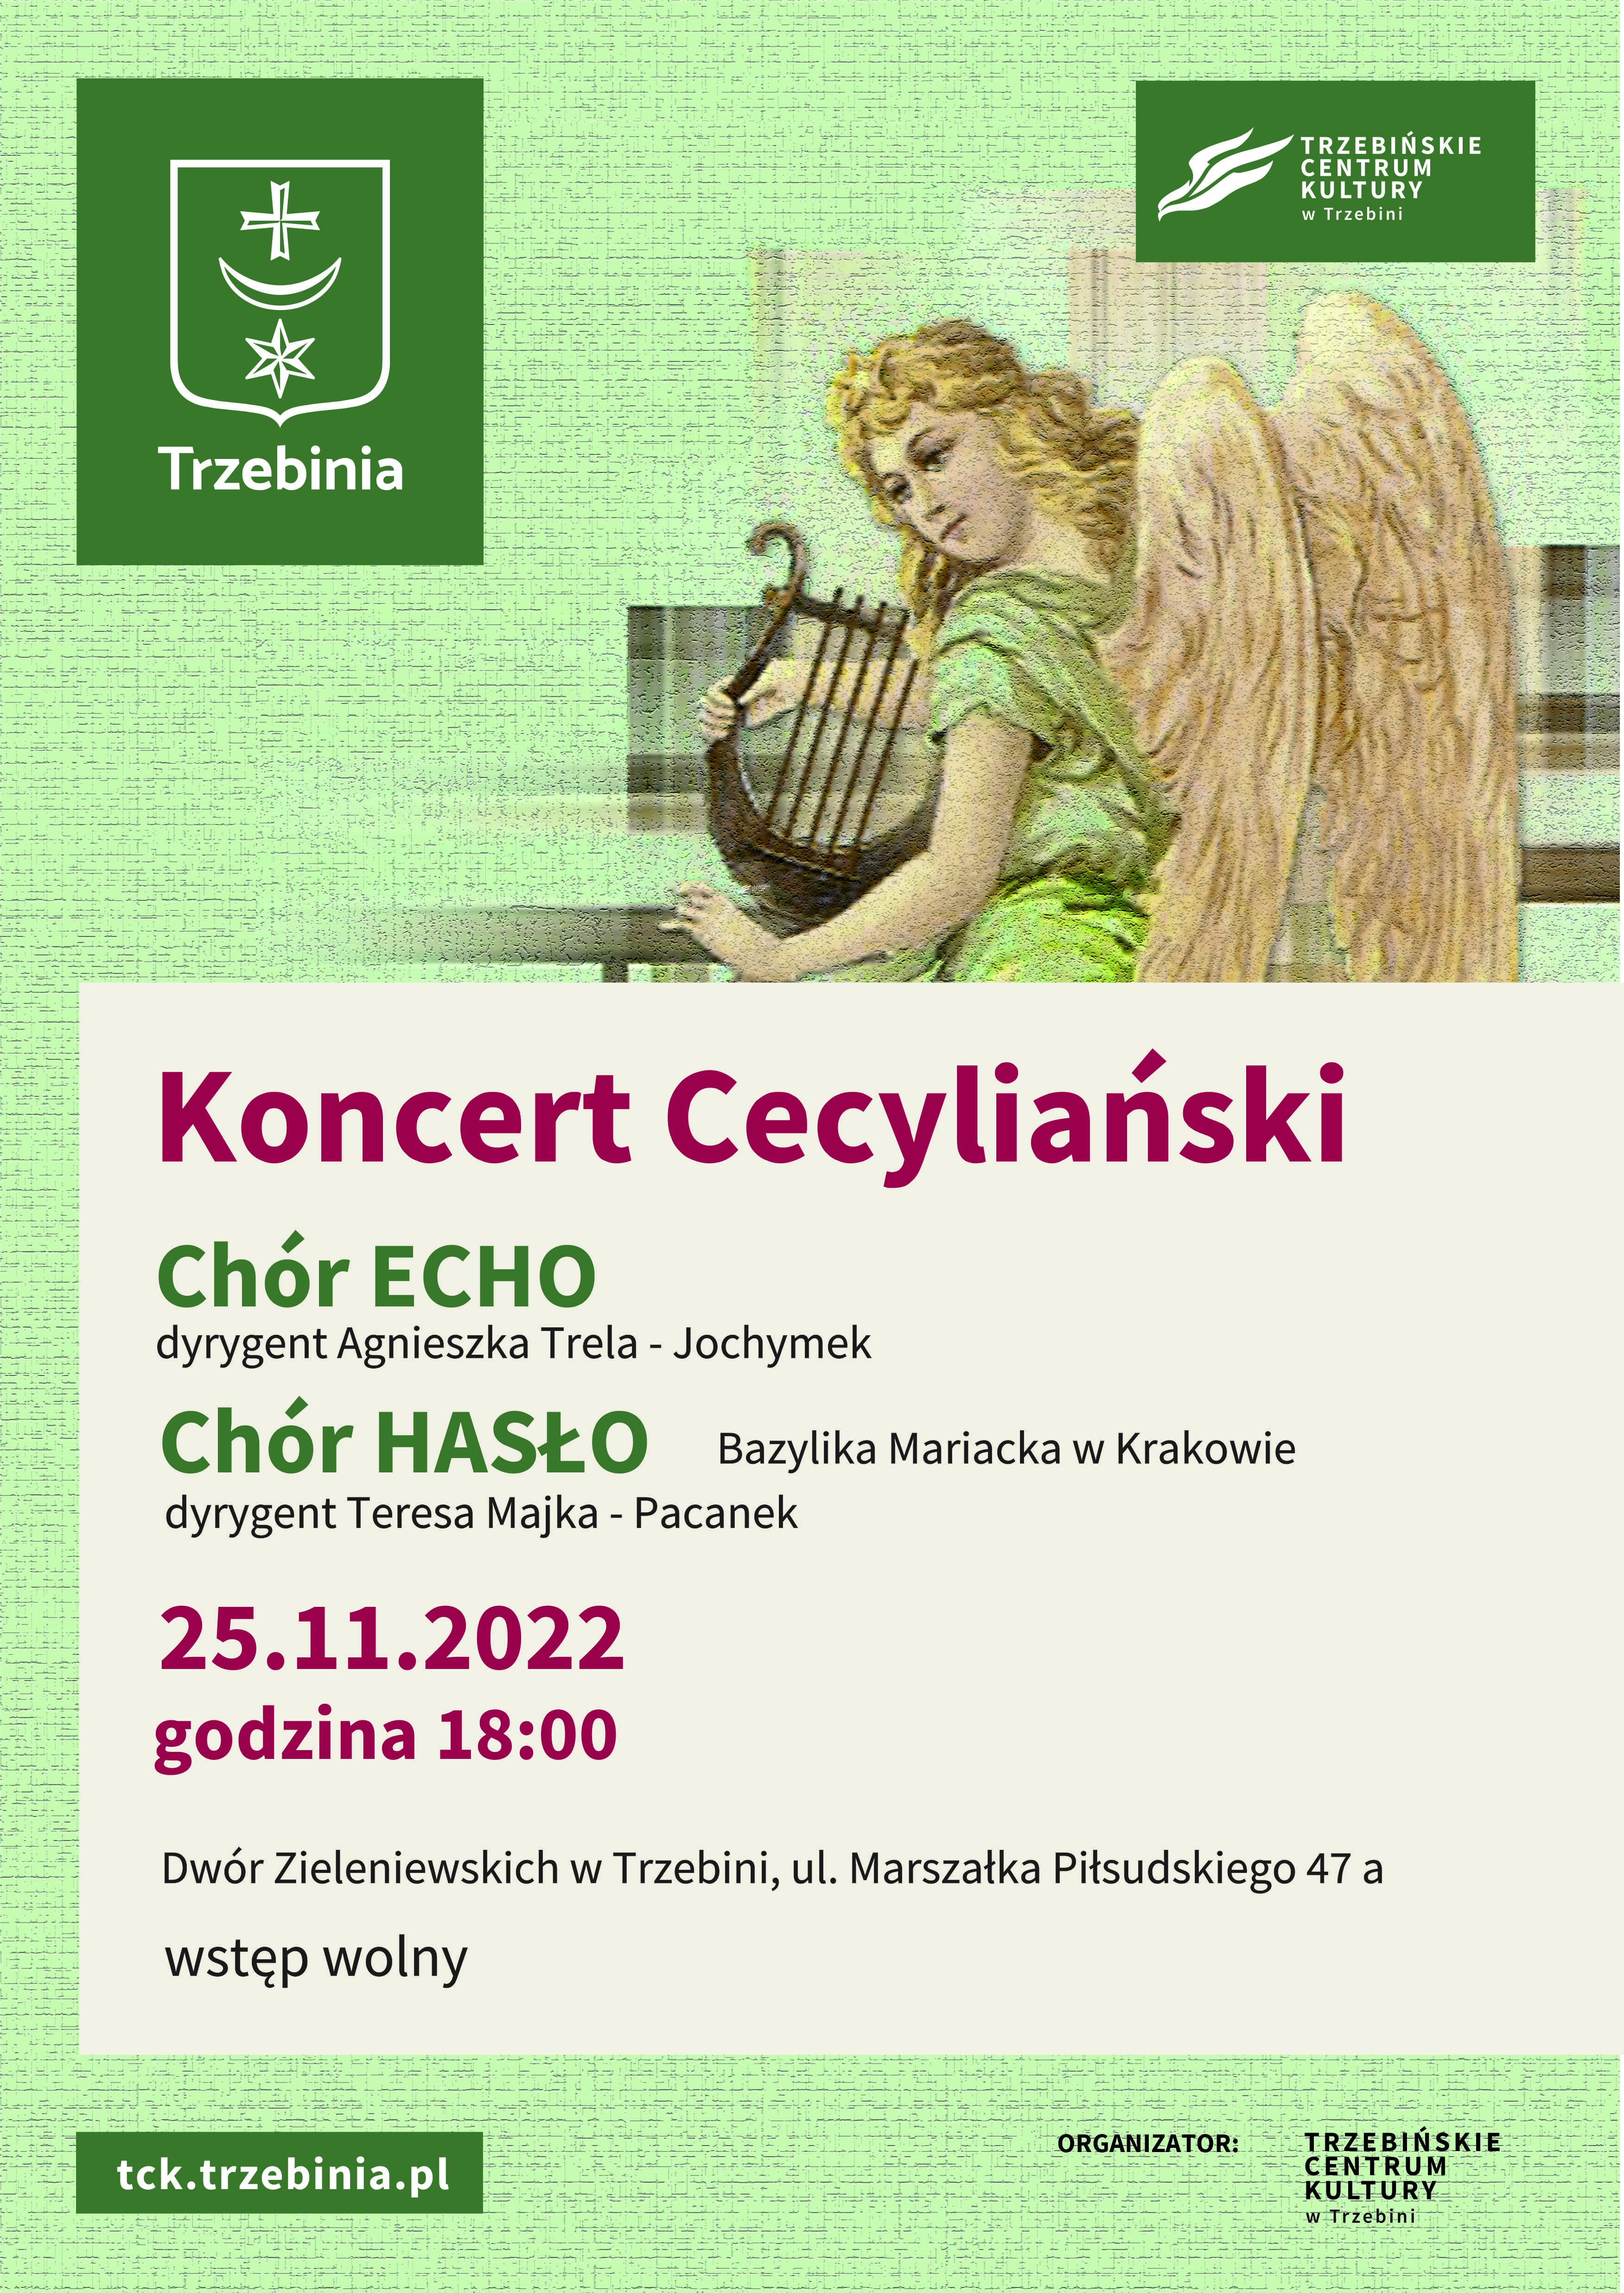 Koncert Cecyliański w Dworze Zieleniewskich